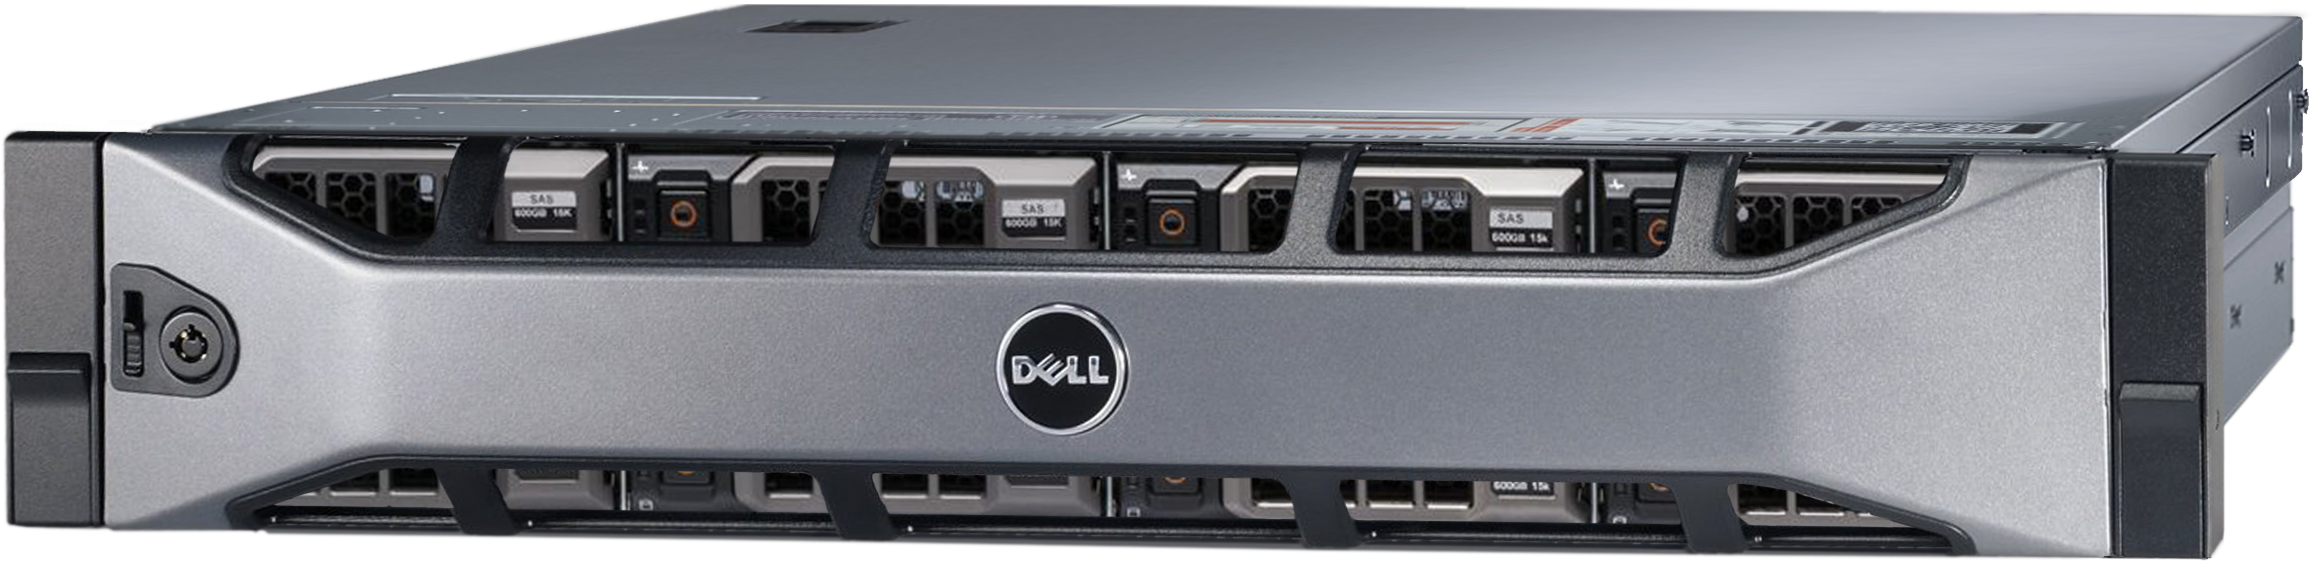 Аренда физического сервера DELL R720xd / 2 × E5-2620 v2 / 32 GB RAM / 2 x 240 GB SSD / 12 x 12 TB HDD / H310